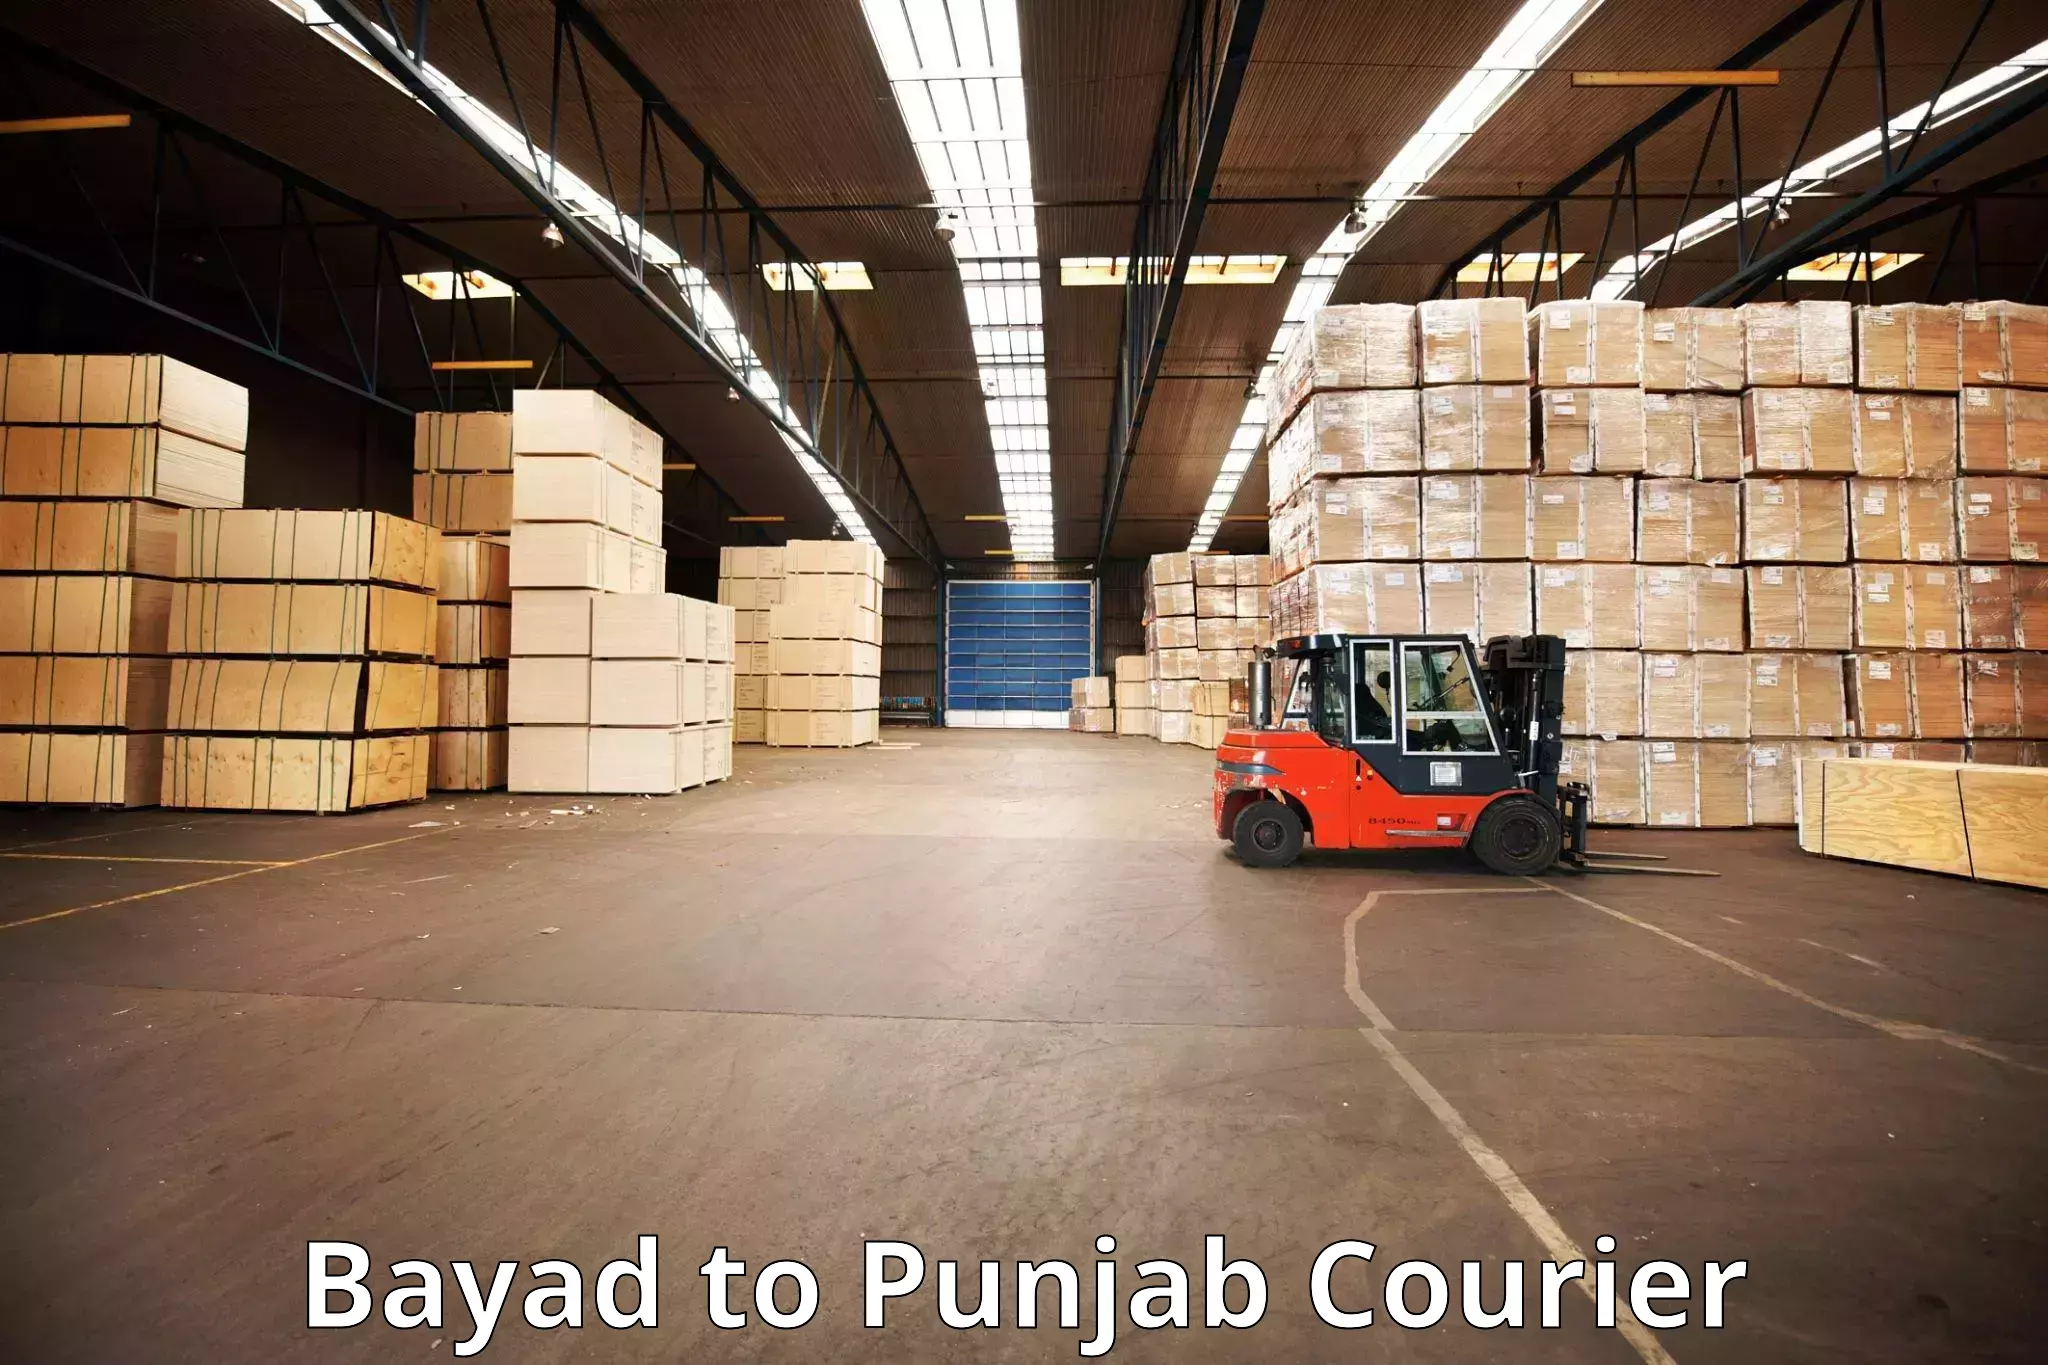 Business luggage transport Bayad to Central University of Punjab Bathinda